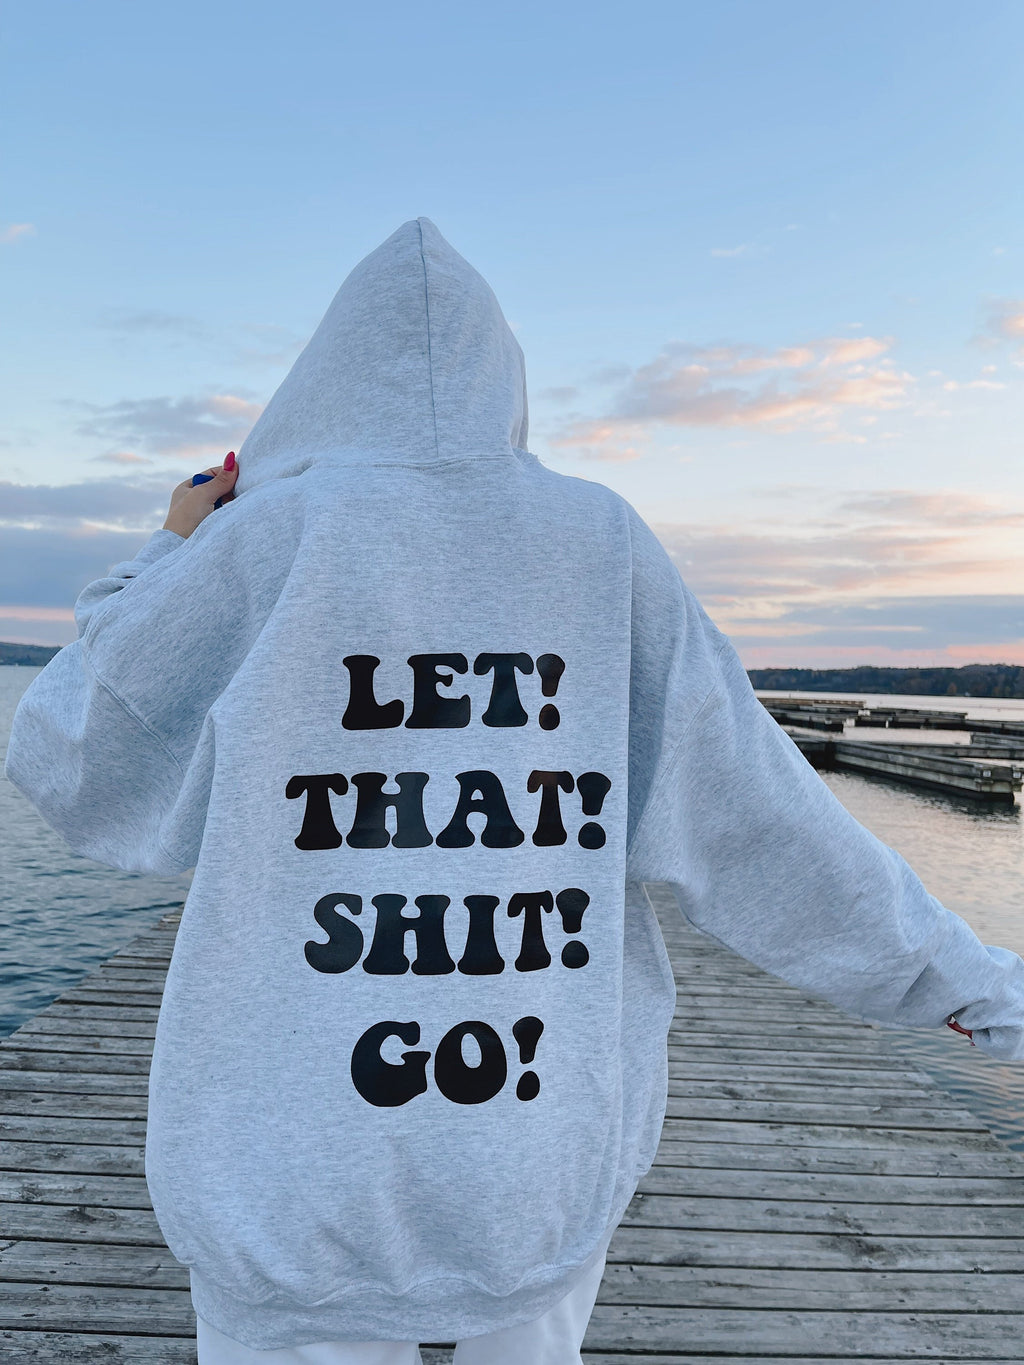 Let It Go Sweatshirt